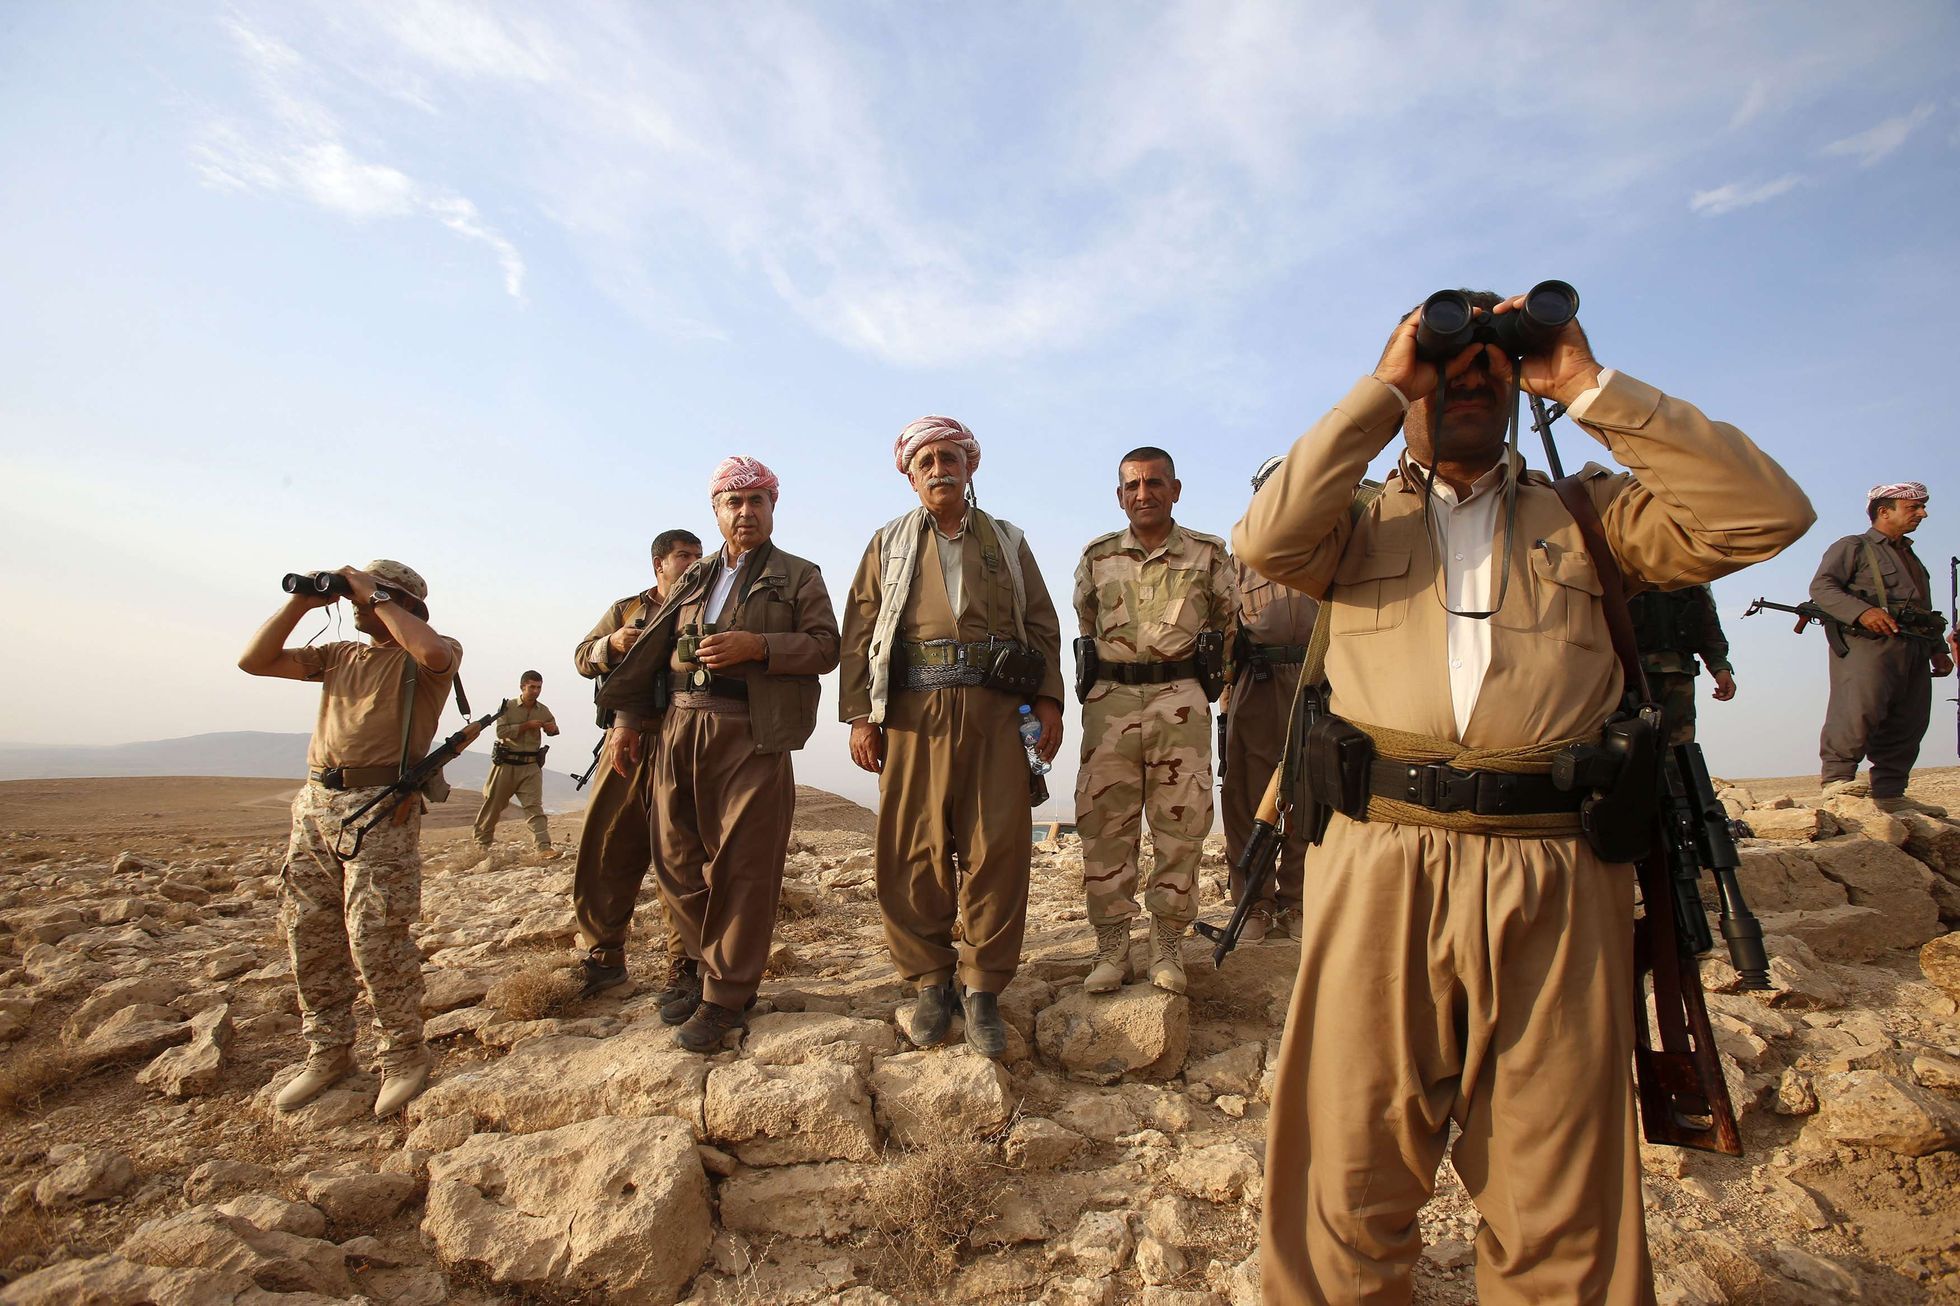 irák - kurdské milice